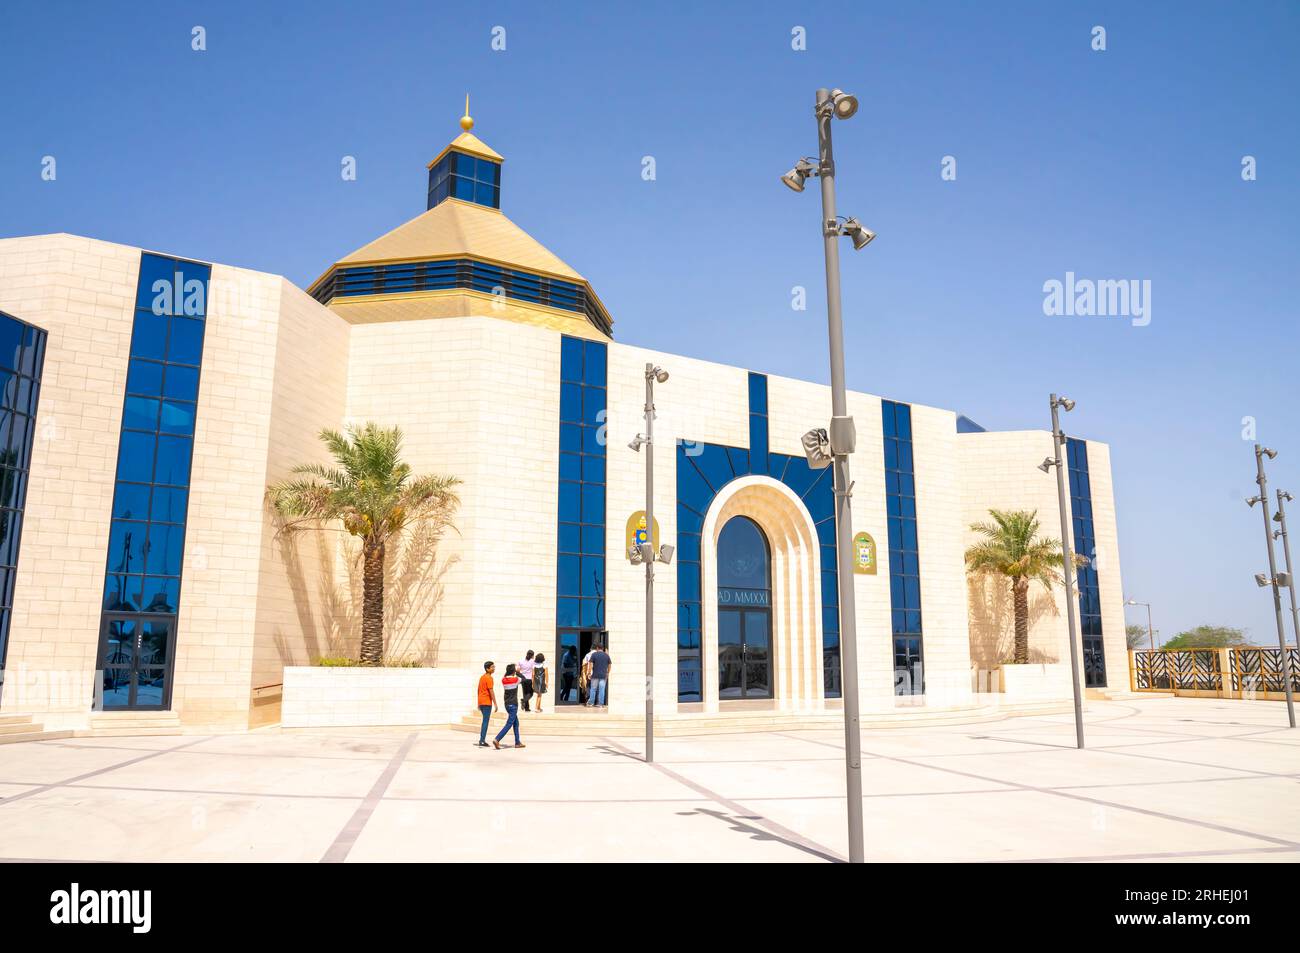 Die Kathedrale unserer Lieben Frau von Arabien. Katholische Kathedrale in Awali, Bahrain. Sie ist Sitz des Apostolischen Vikars von Nordarabien. Stockfoto